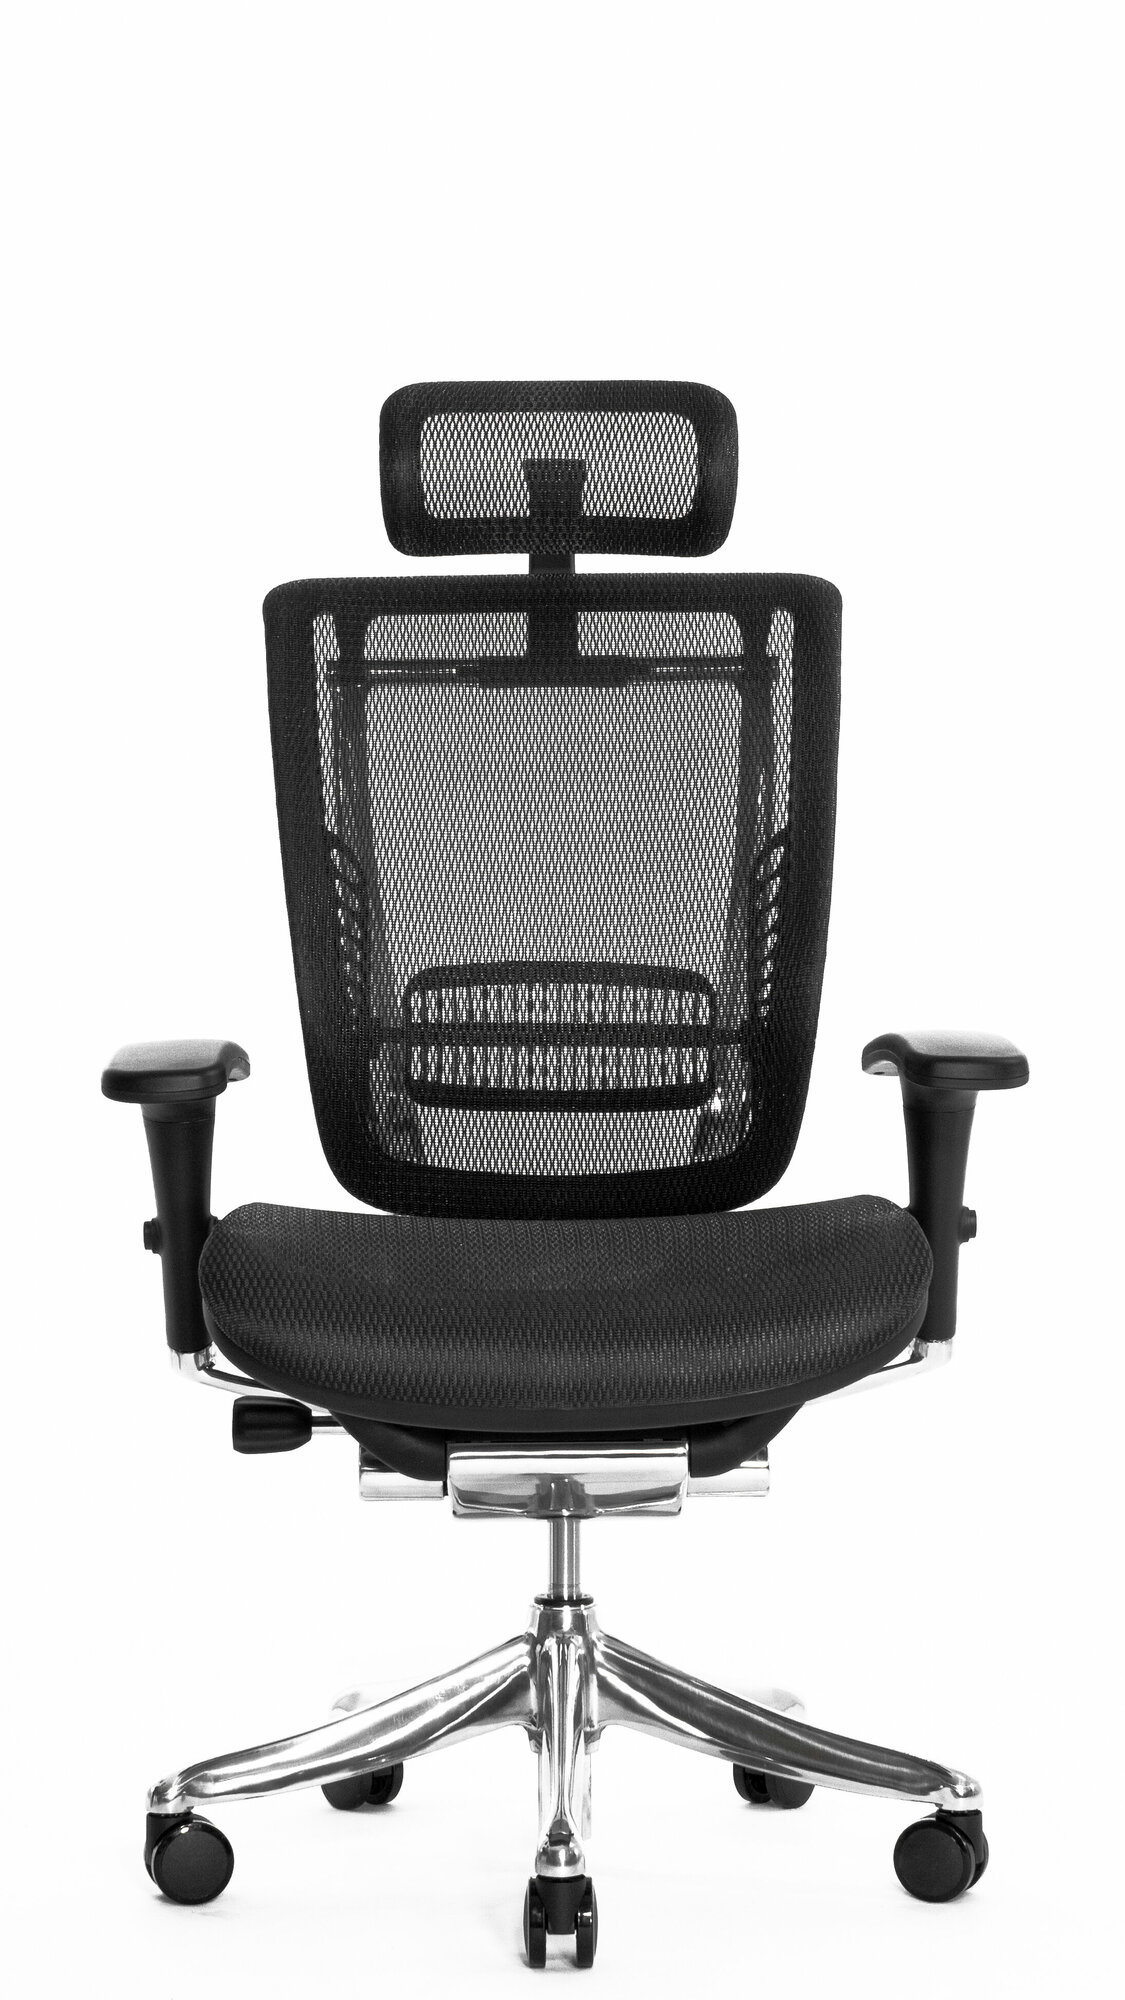 Эргономичное офисное компьютерное кресло Falto Expert Spring, цвет черный